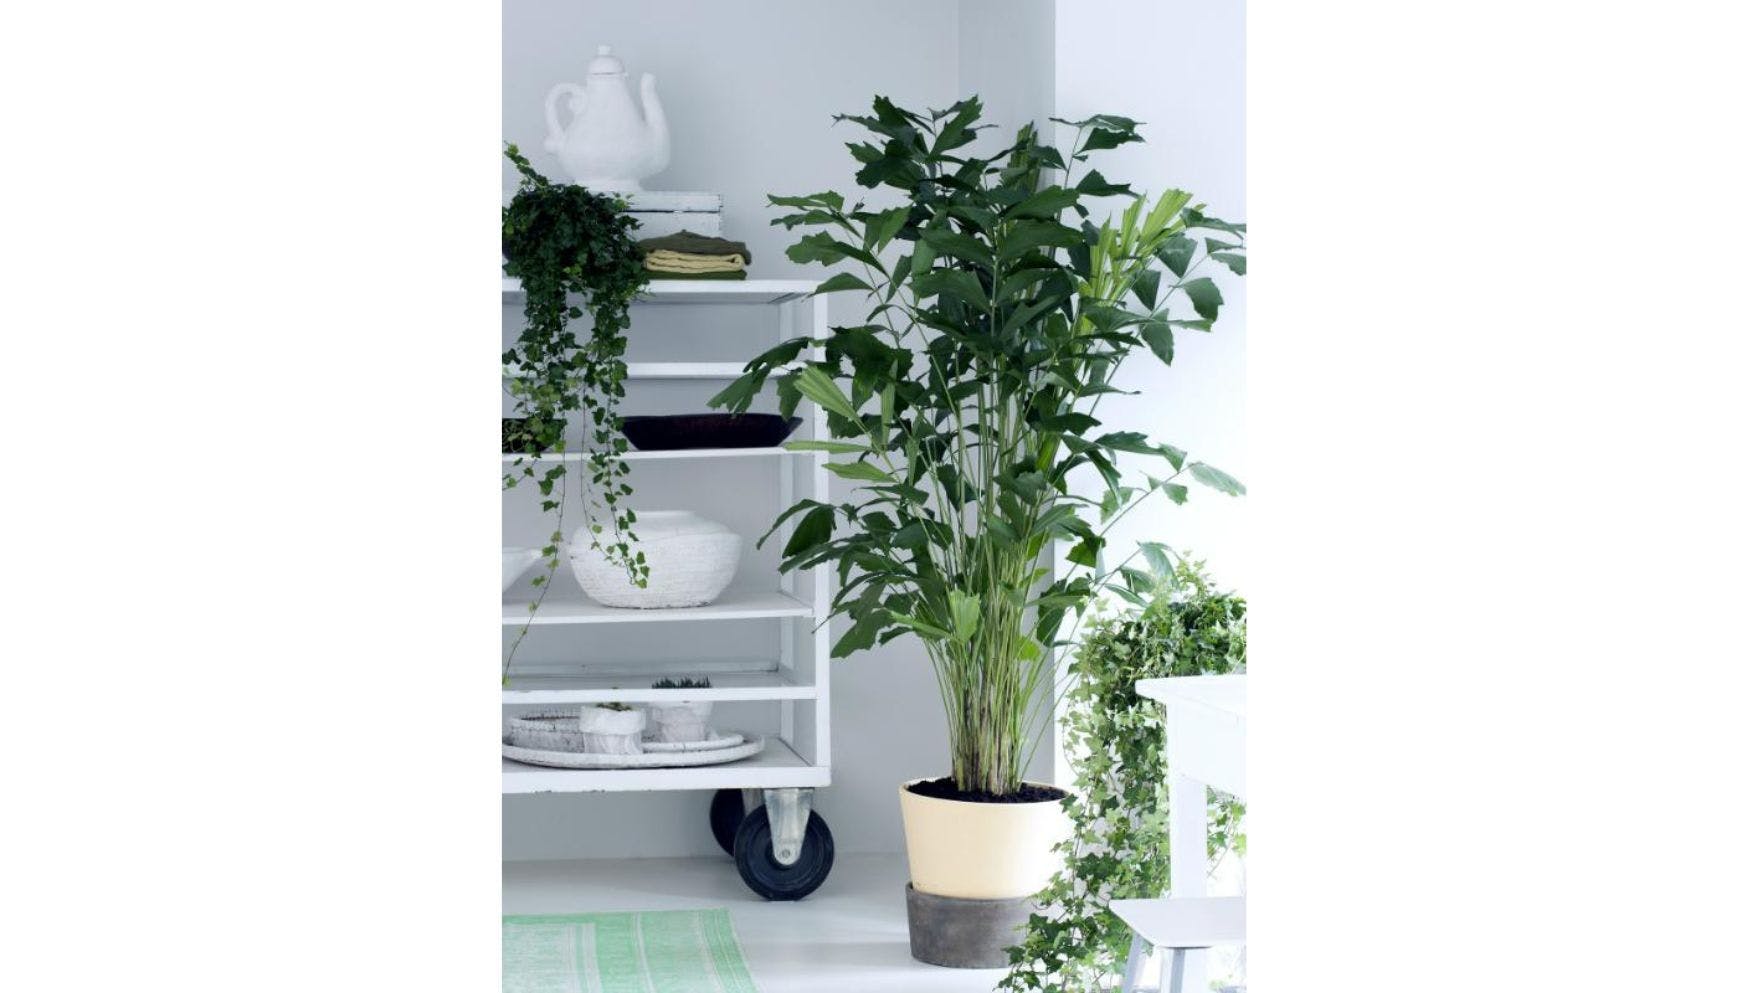 Caryota plant